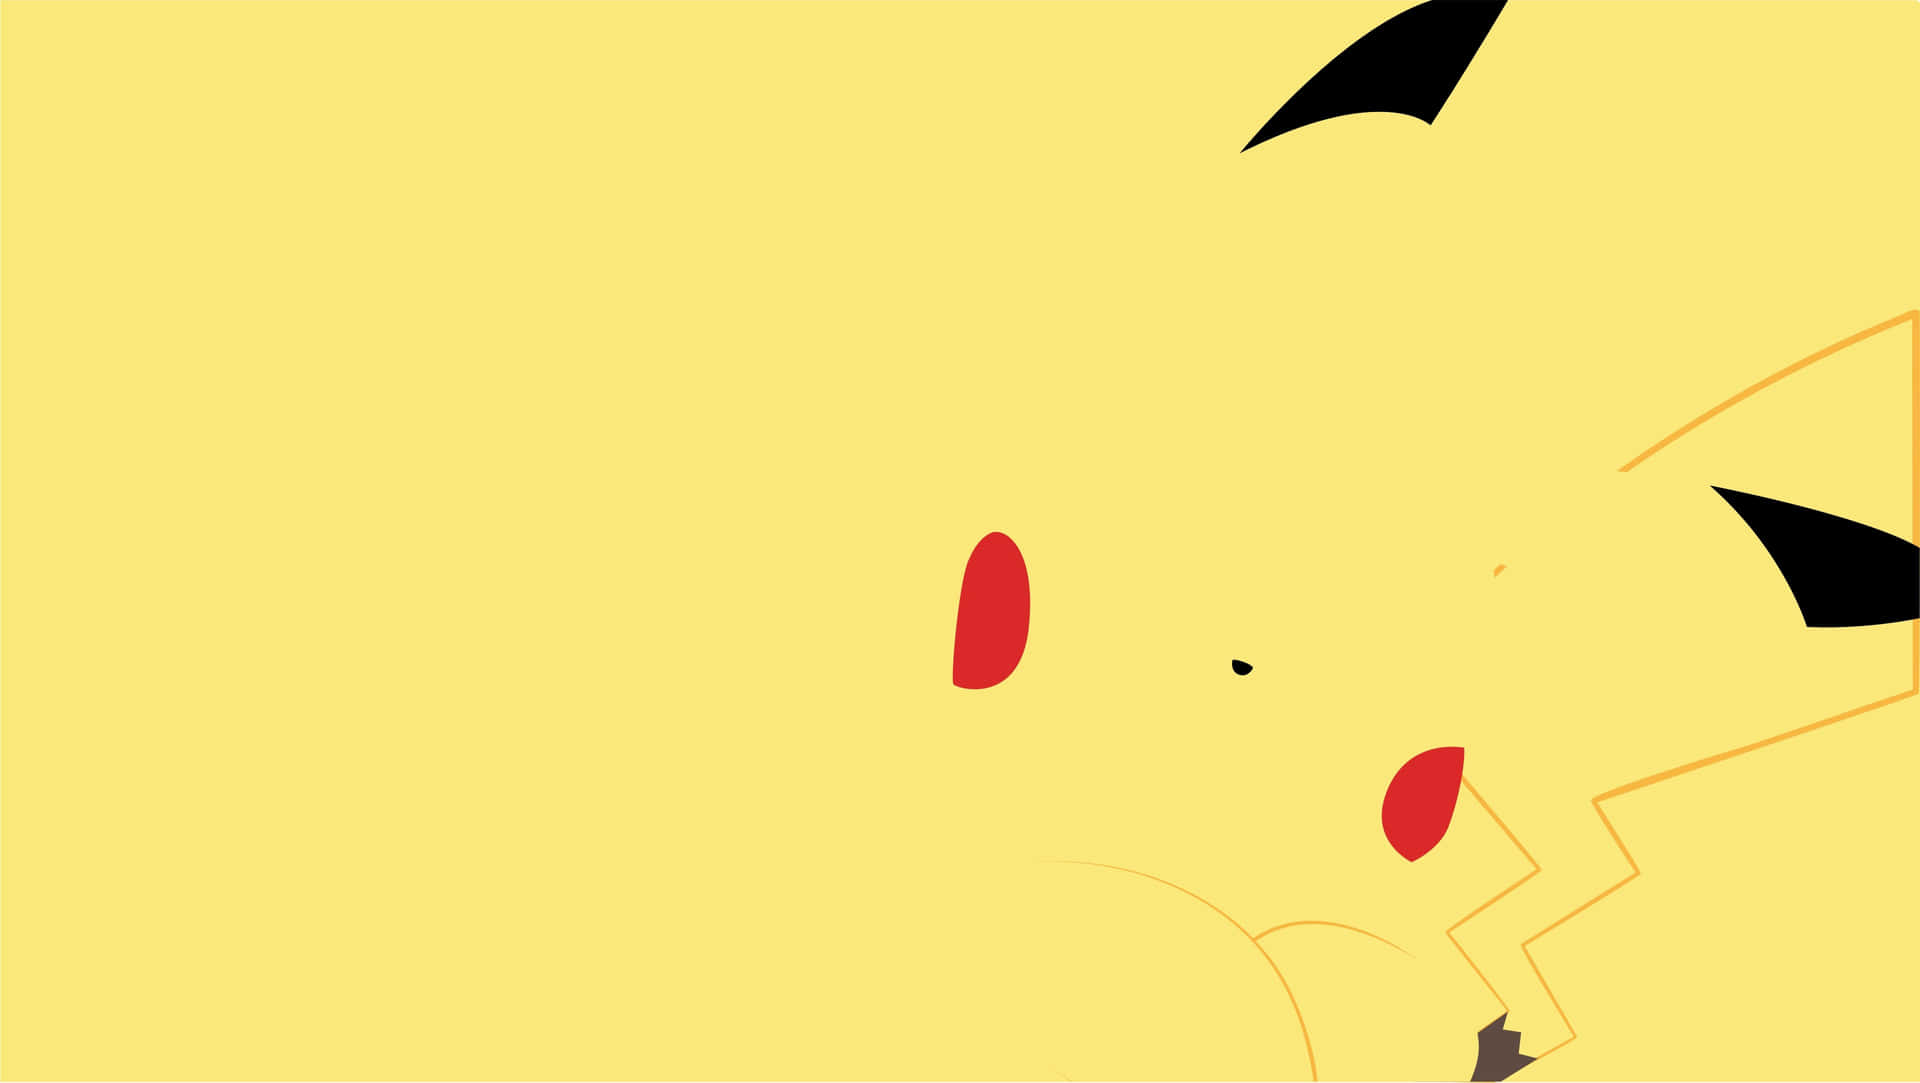 Pikachu Pokemon Aesthetic Vector Art Wallpaper